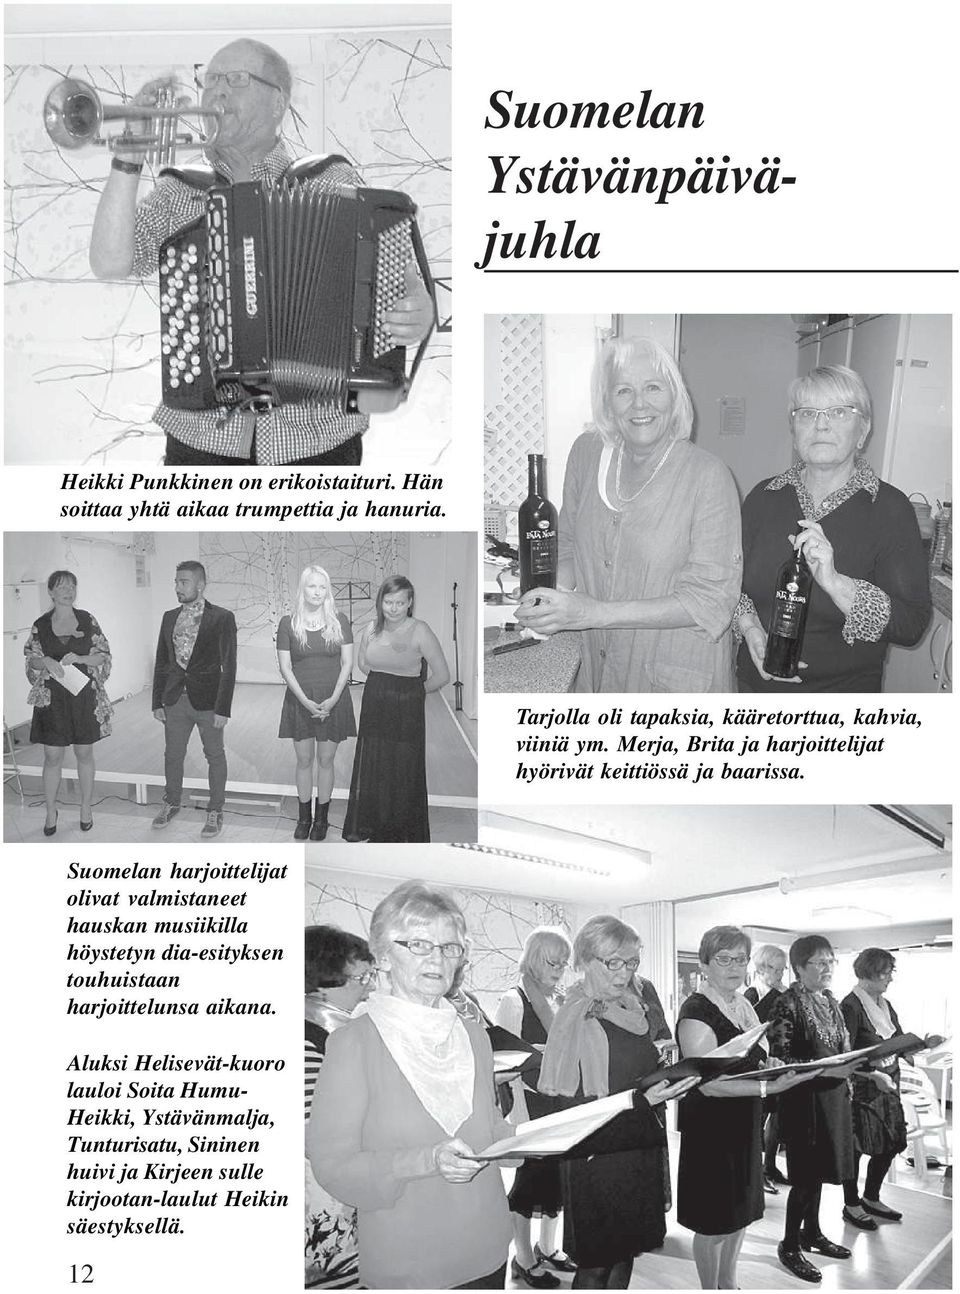 Suomelan harjoittelijat olivat valmistaneet hauskan musiikilla höystetyn dia-esityksen touhuistaan harjoittelunsa aikana.